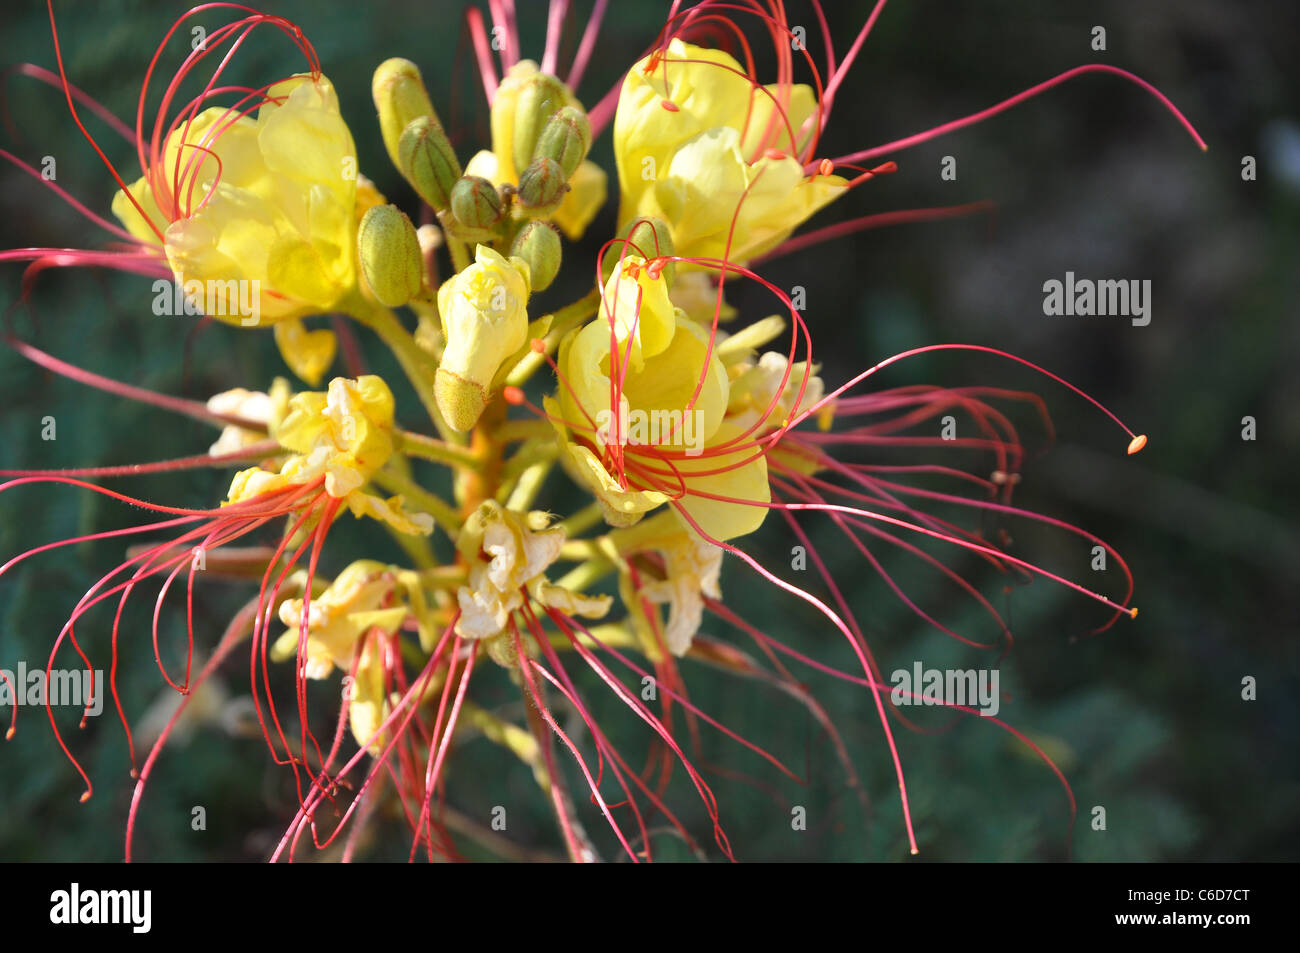 Fiore giallo con lunghi filamenti rossi e antere di piccole dimensioni Foto Stock